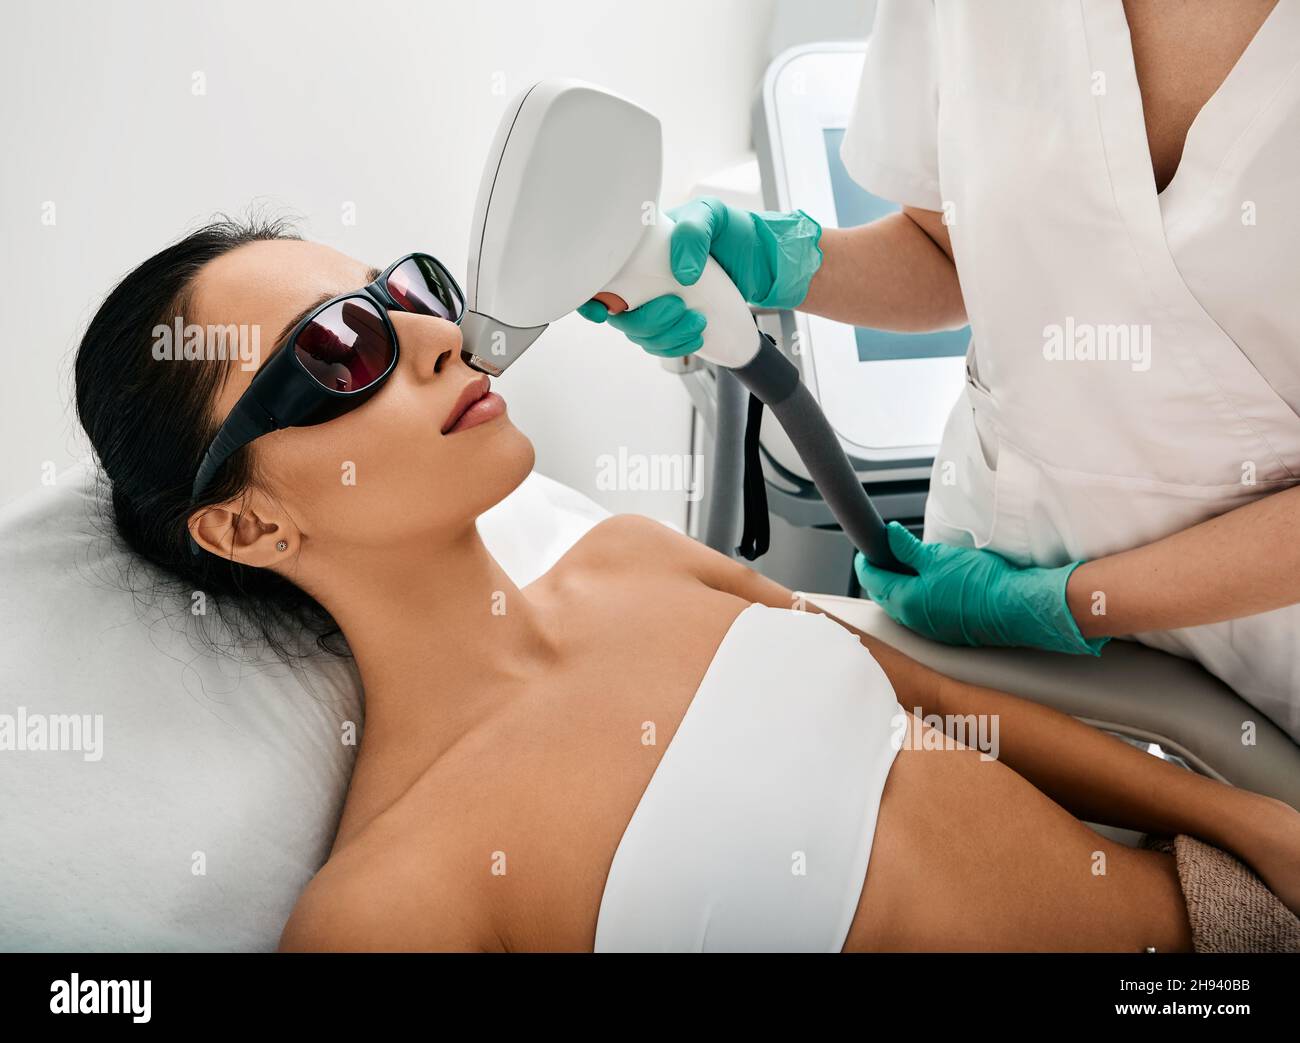 Haarentfernung über den Lippen. Frau während eines Laser-Haarentfernungsverfahrens und des weiblichen Schnurrbartens Stockfoto